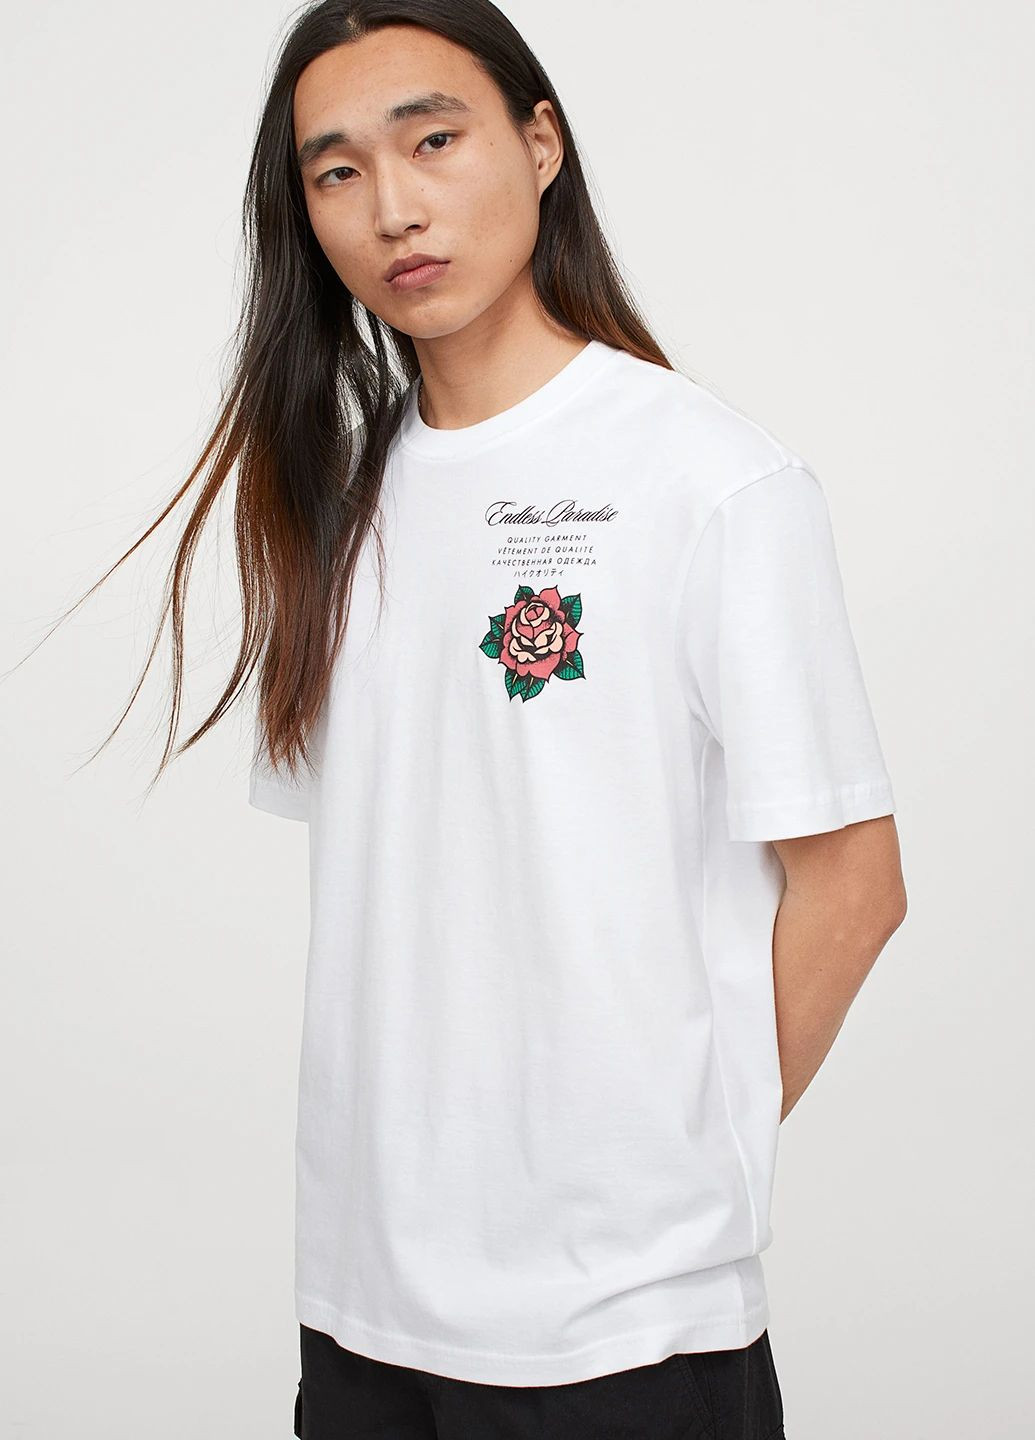 Біла футболка з принтом для чоловіка 0684021-5 білий H&M